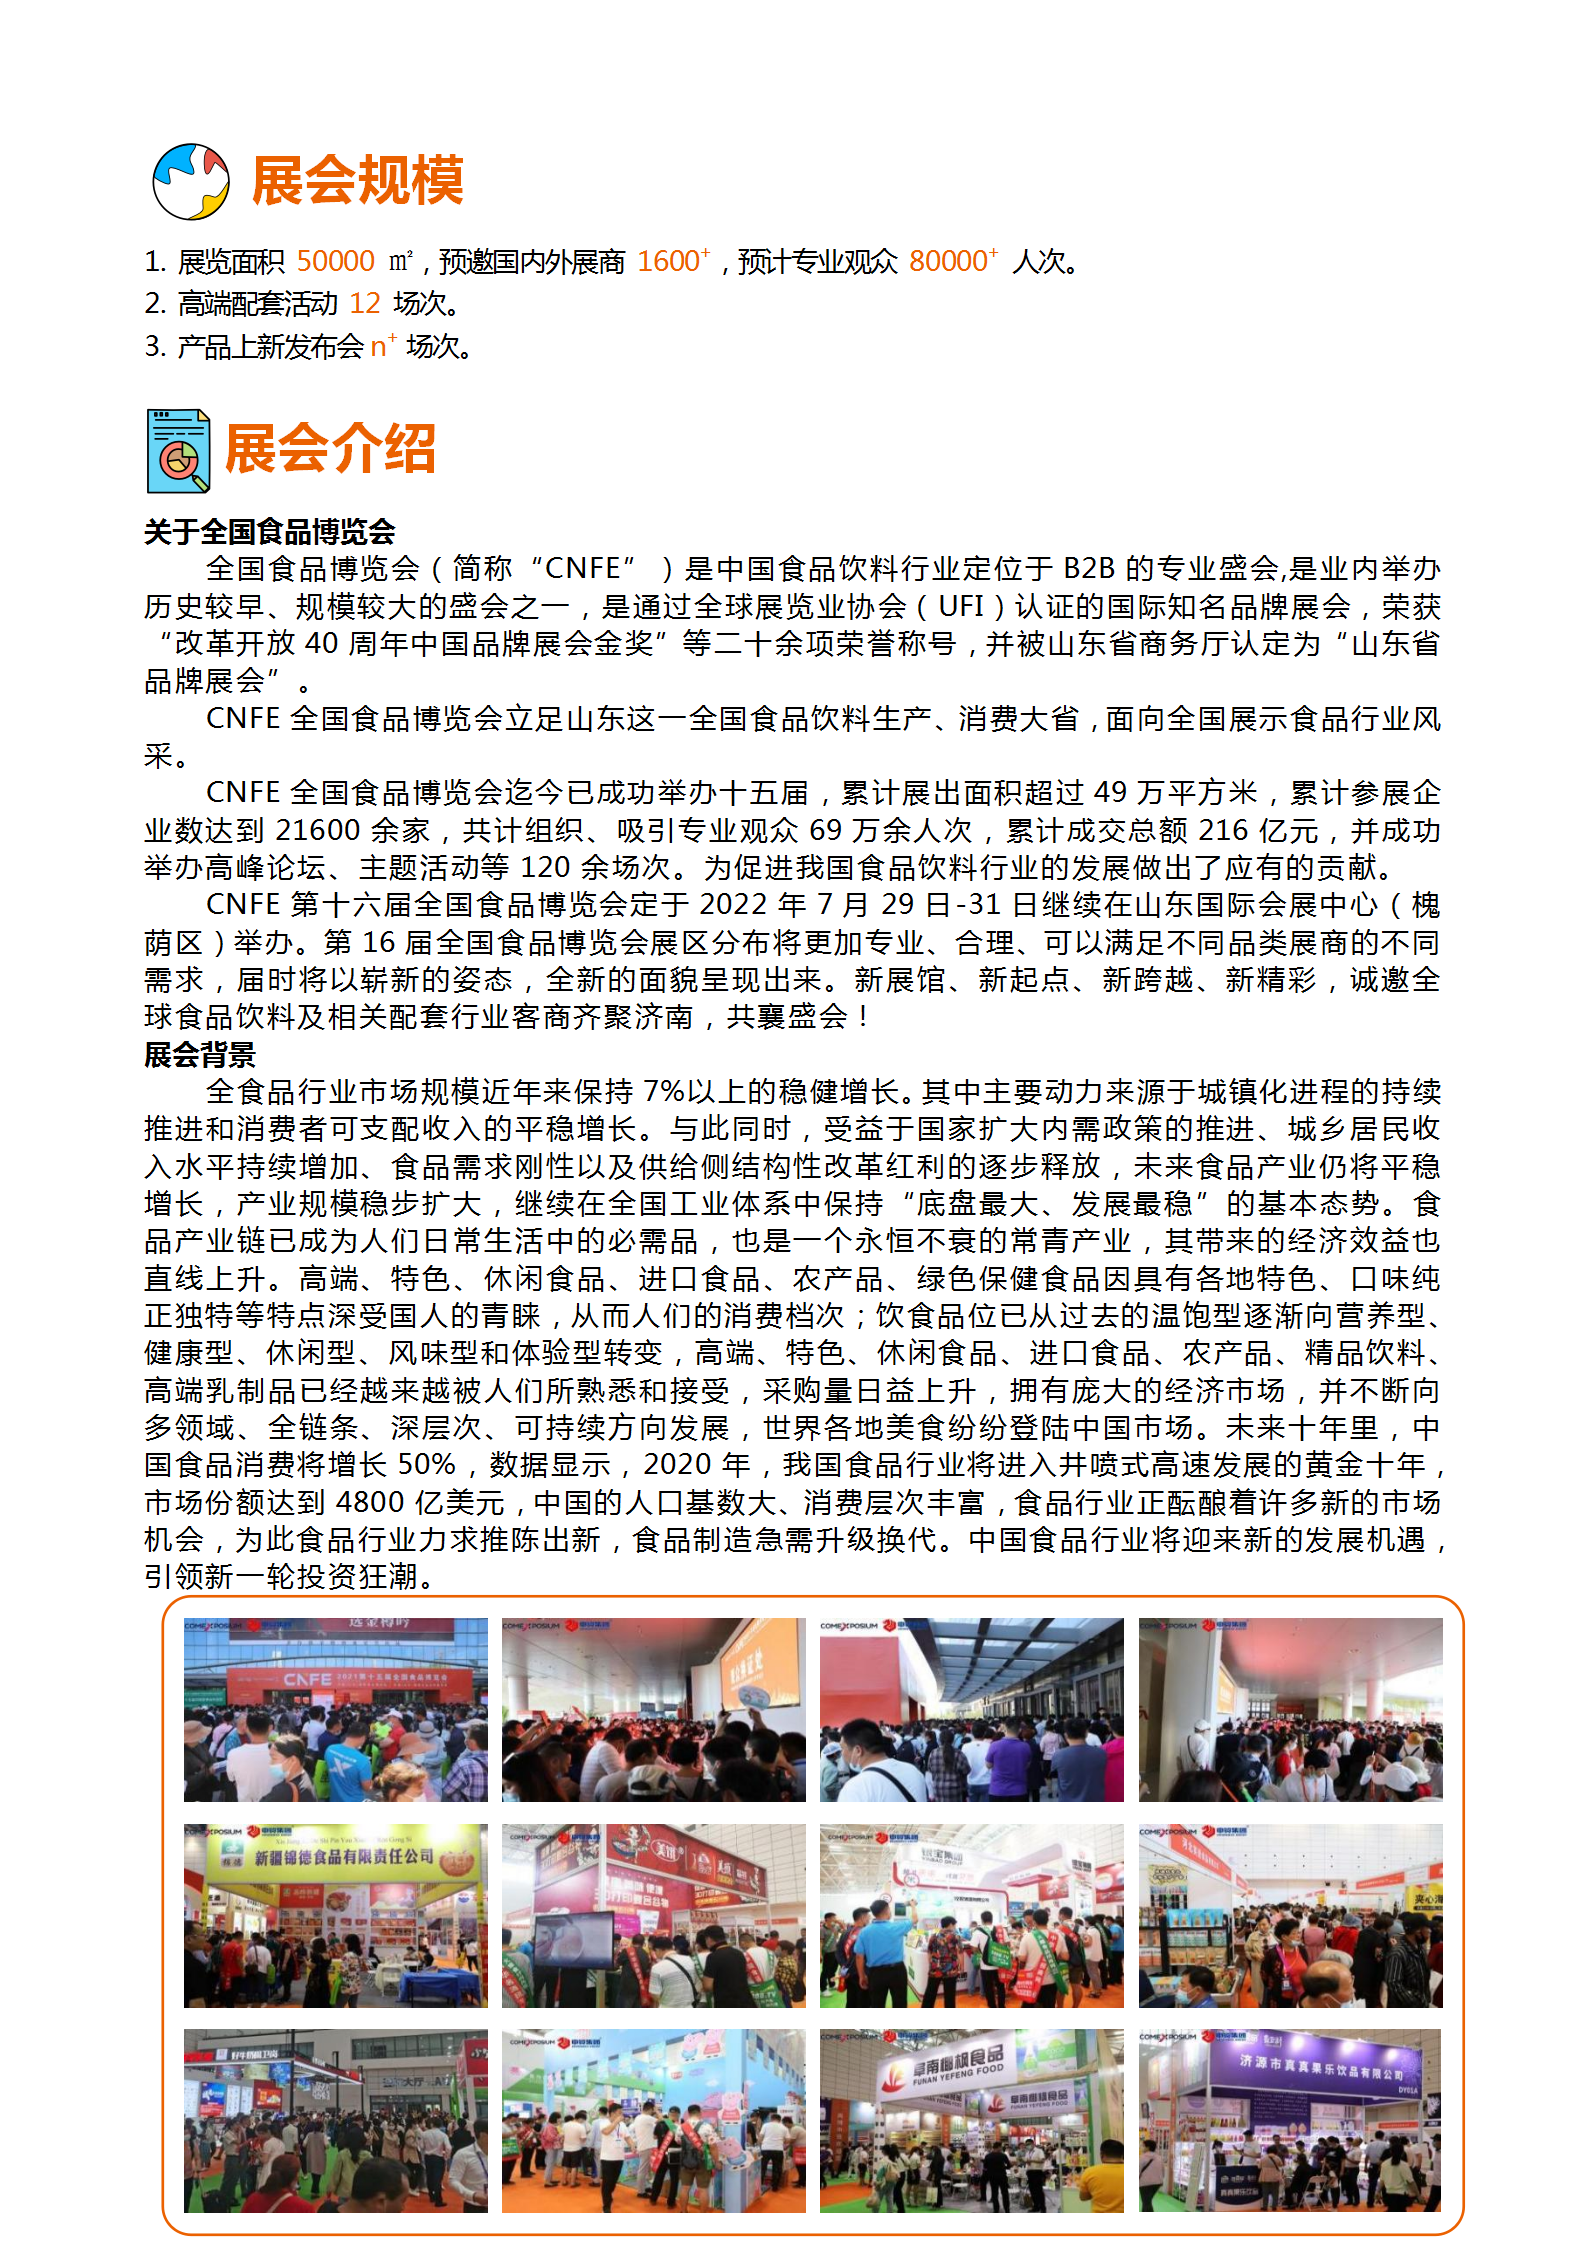 邀请函-2022第十六届全国食品博览会(济南)(2)_02.png